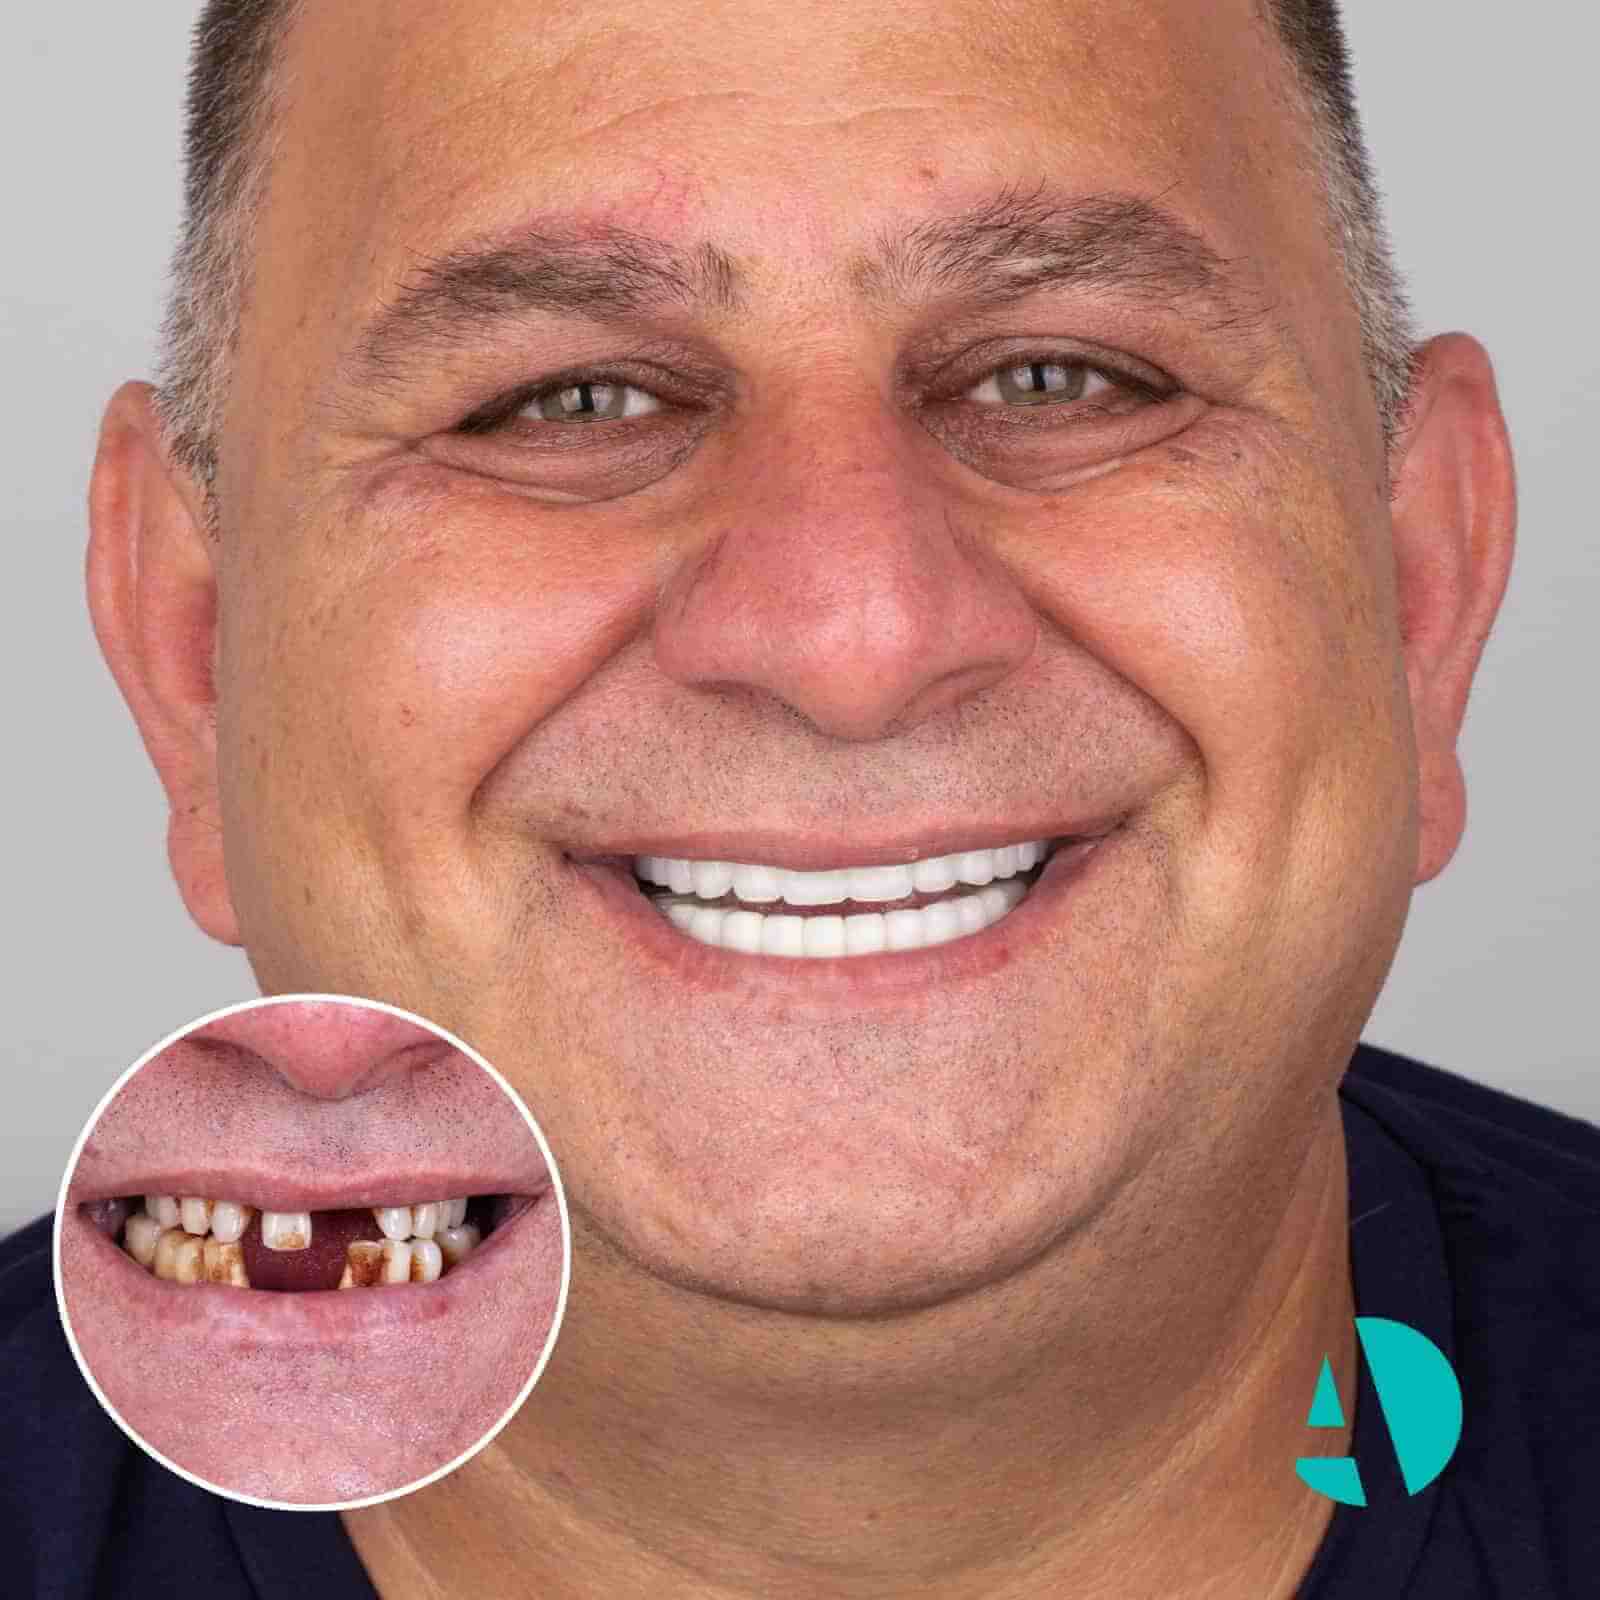 dental implant before after i